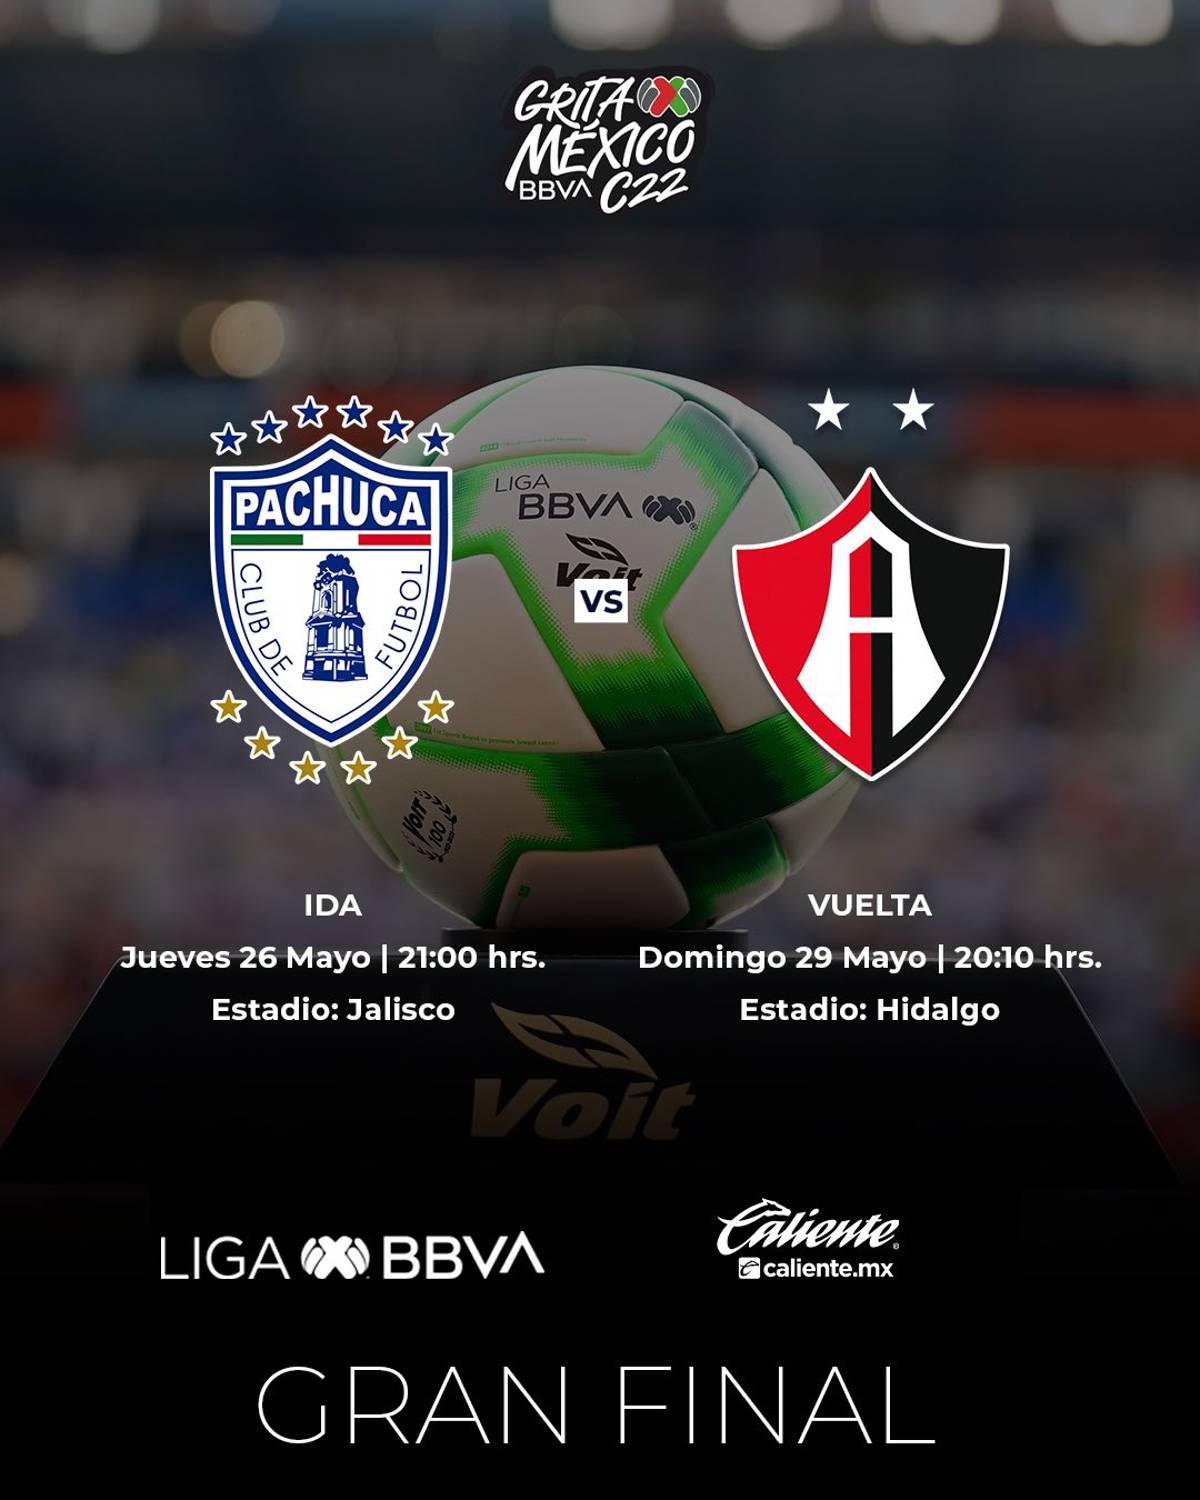 La Liga MX dio a conocer los horarios de los juegos correspondientes a la final del Clausura 2022